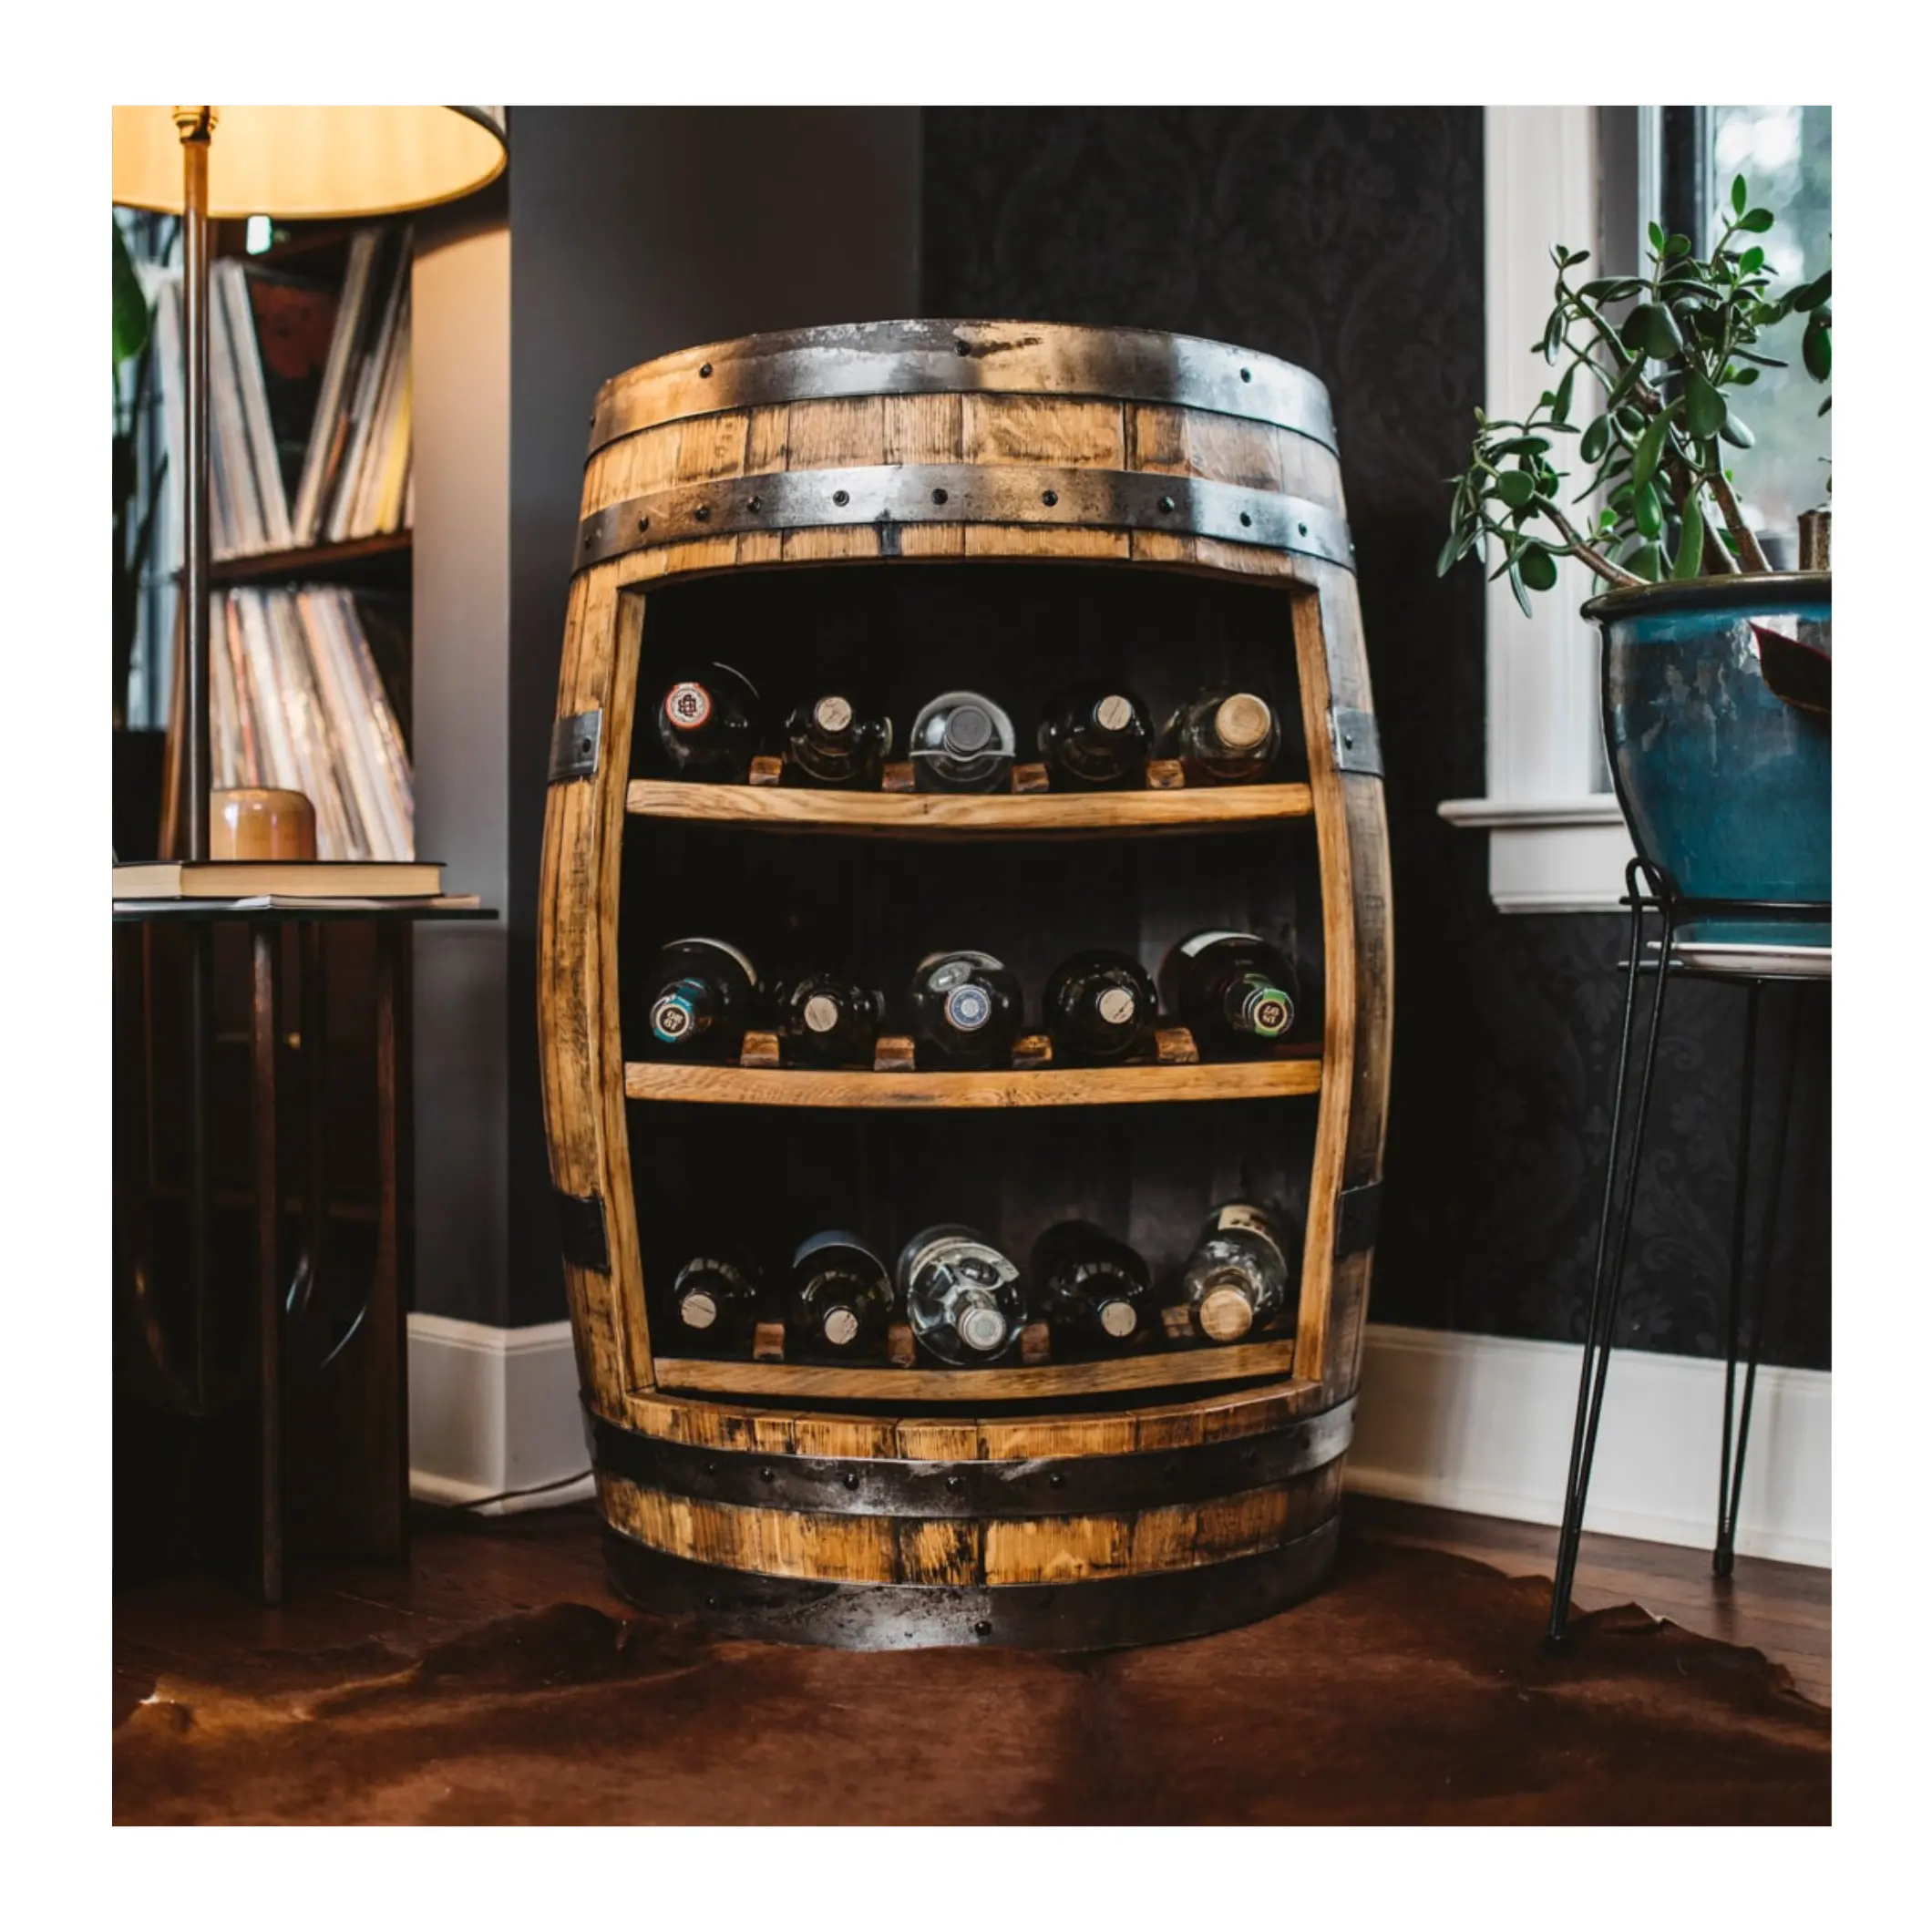 カスタムウイスキー酒バレルドライハウスキャビネット | オープンコンセプトワインバレルラック | | ワインボトルディスプレイ収納バレル